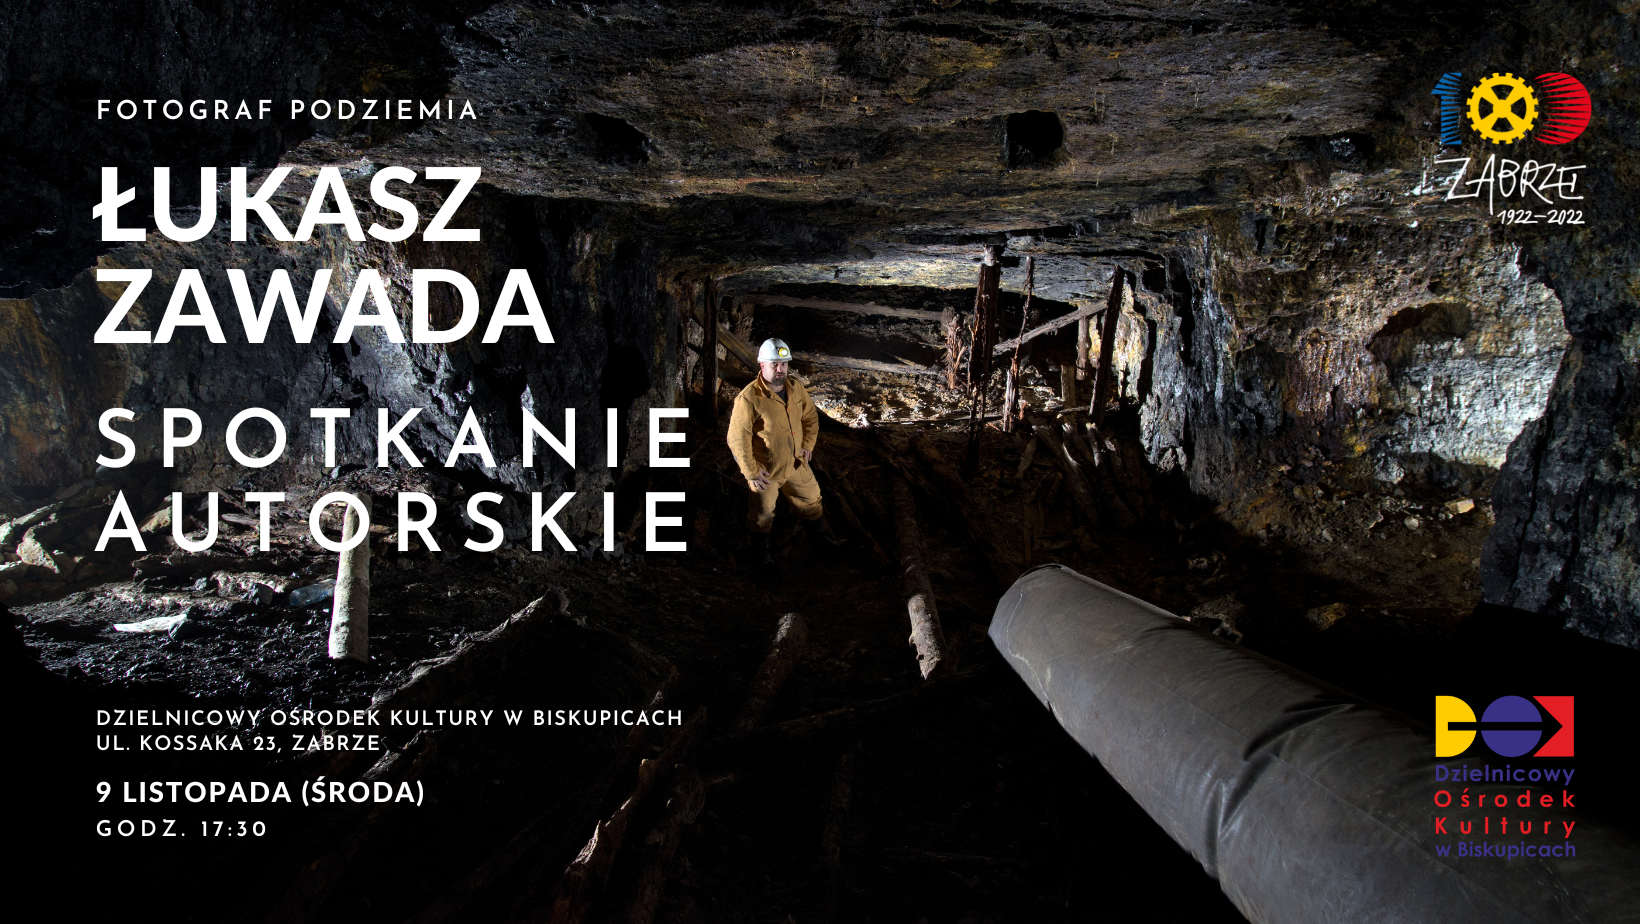 baner promujący spotkanie autorskie, przedstawiające górnika w kopalni